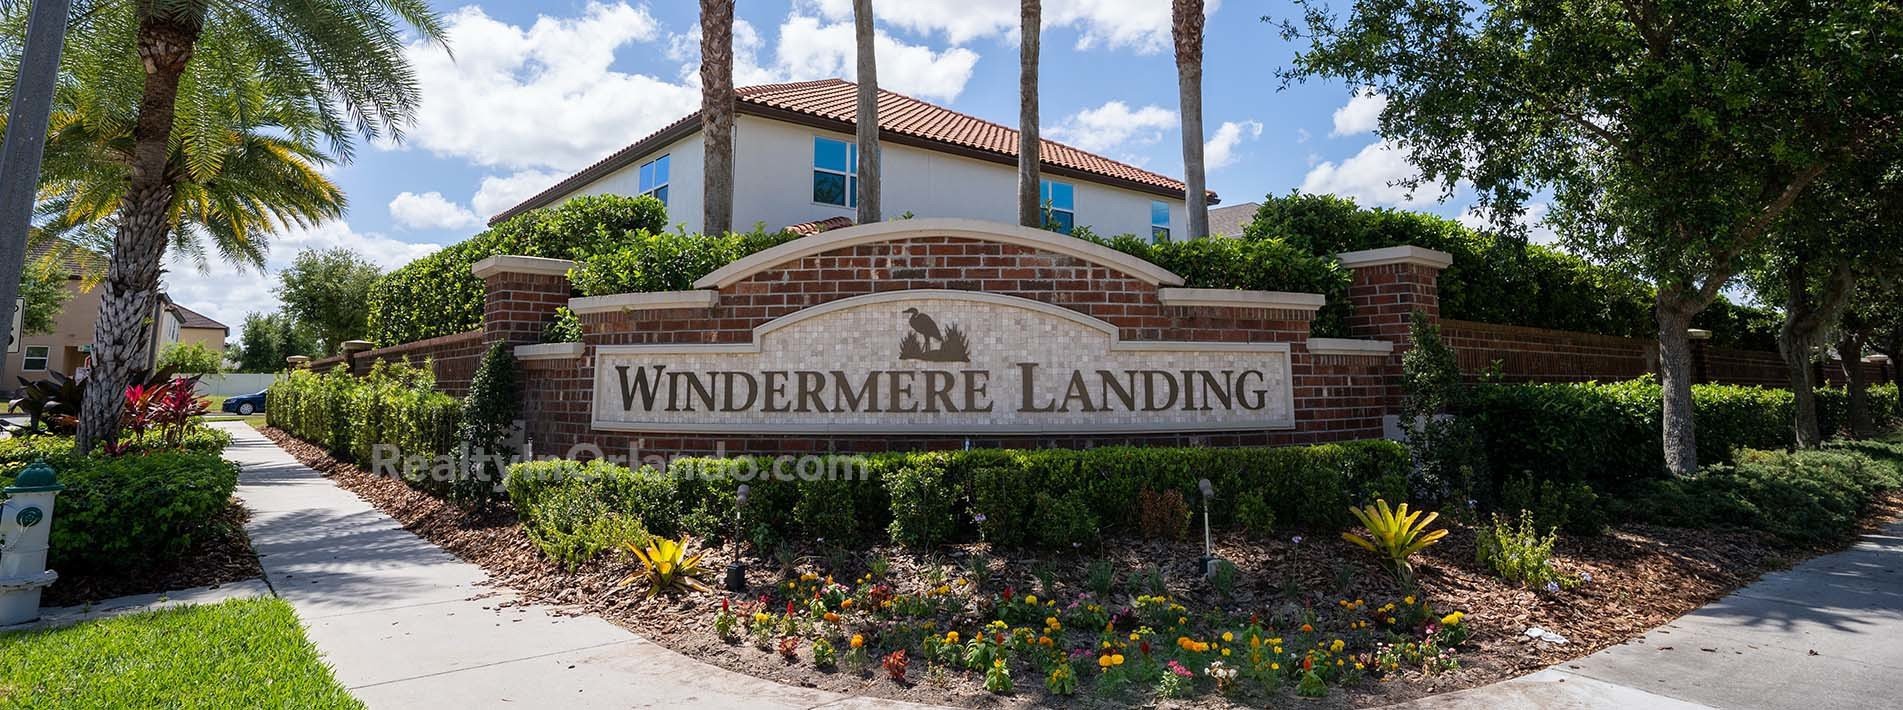 Windermere Landing Real Estate